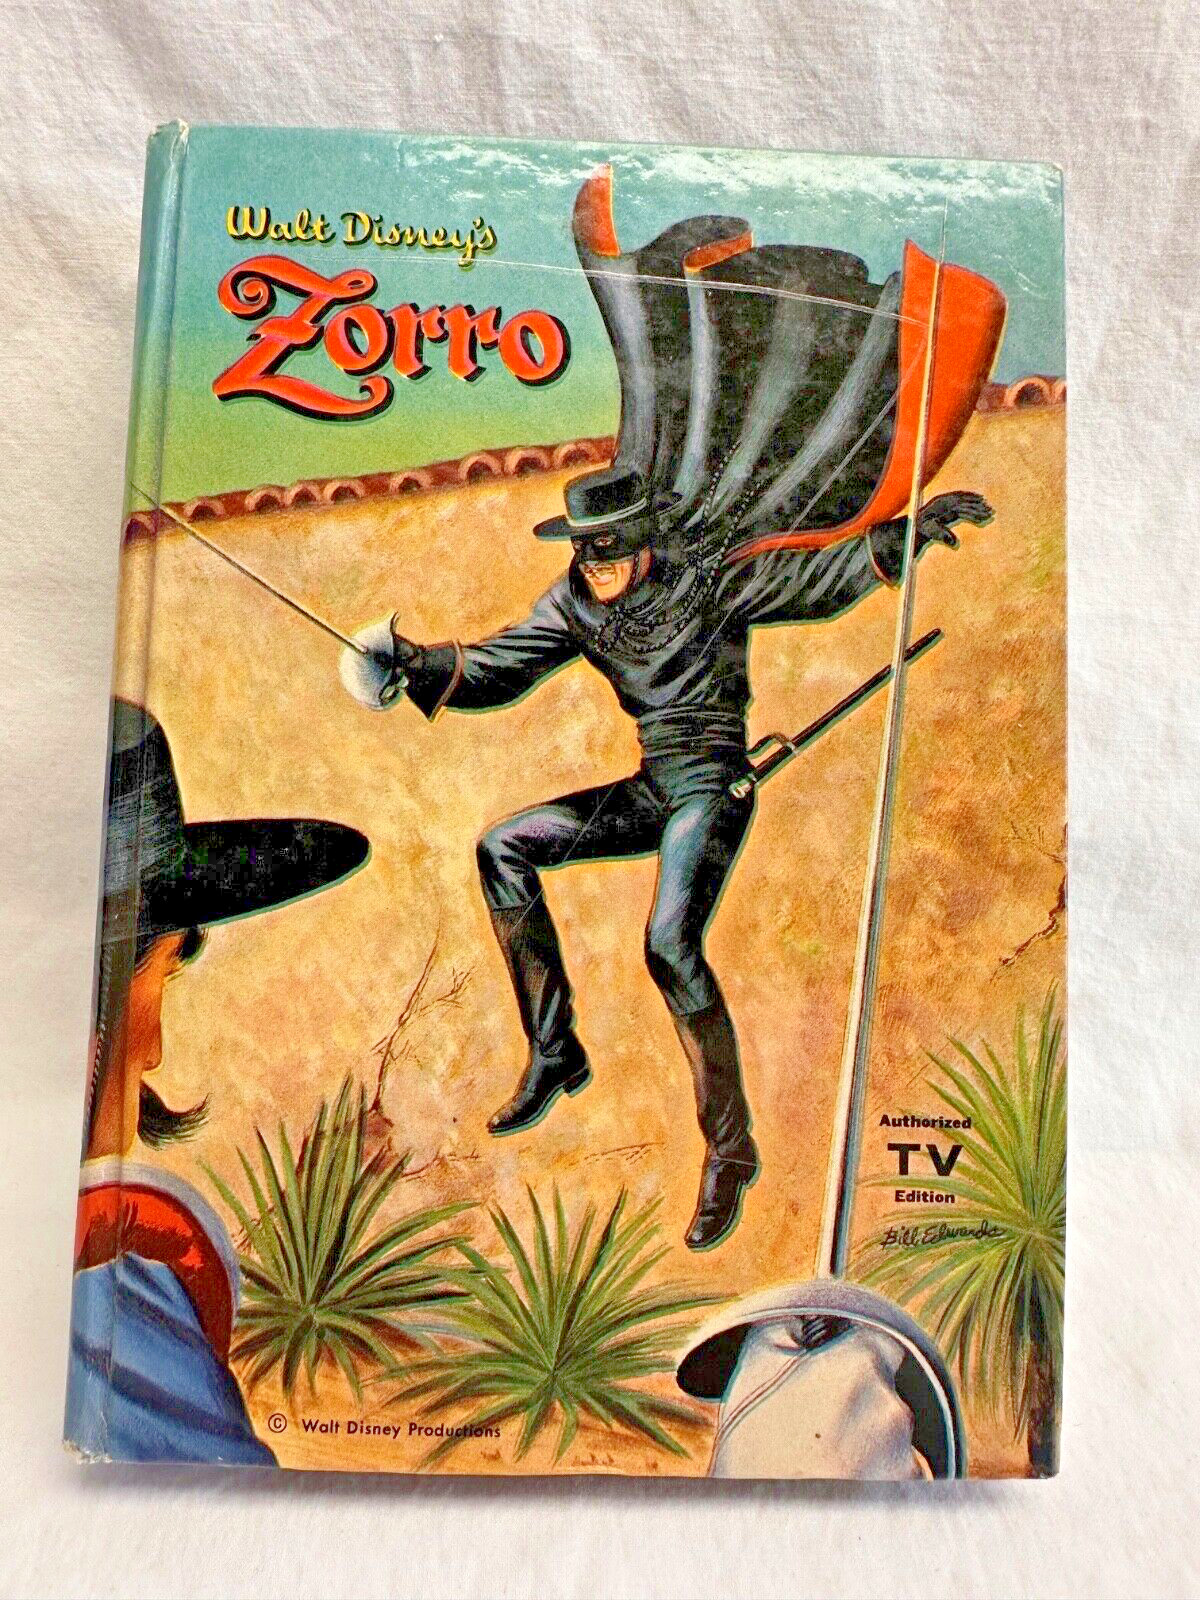 Walt Disney's Zorro, Authorized TV Edition, 1958